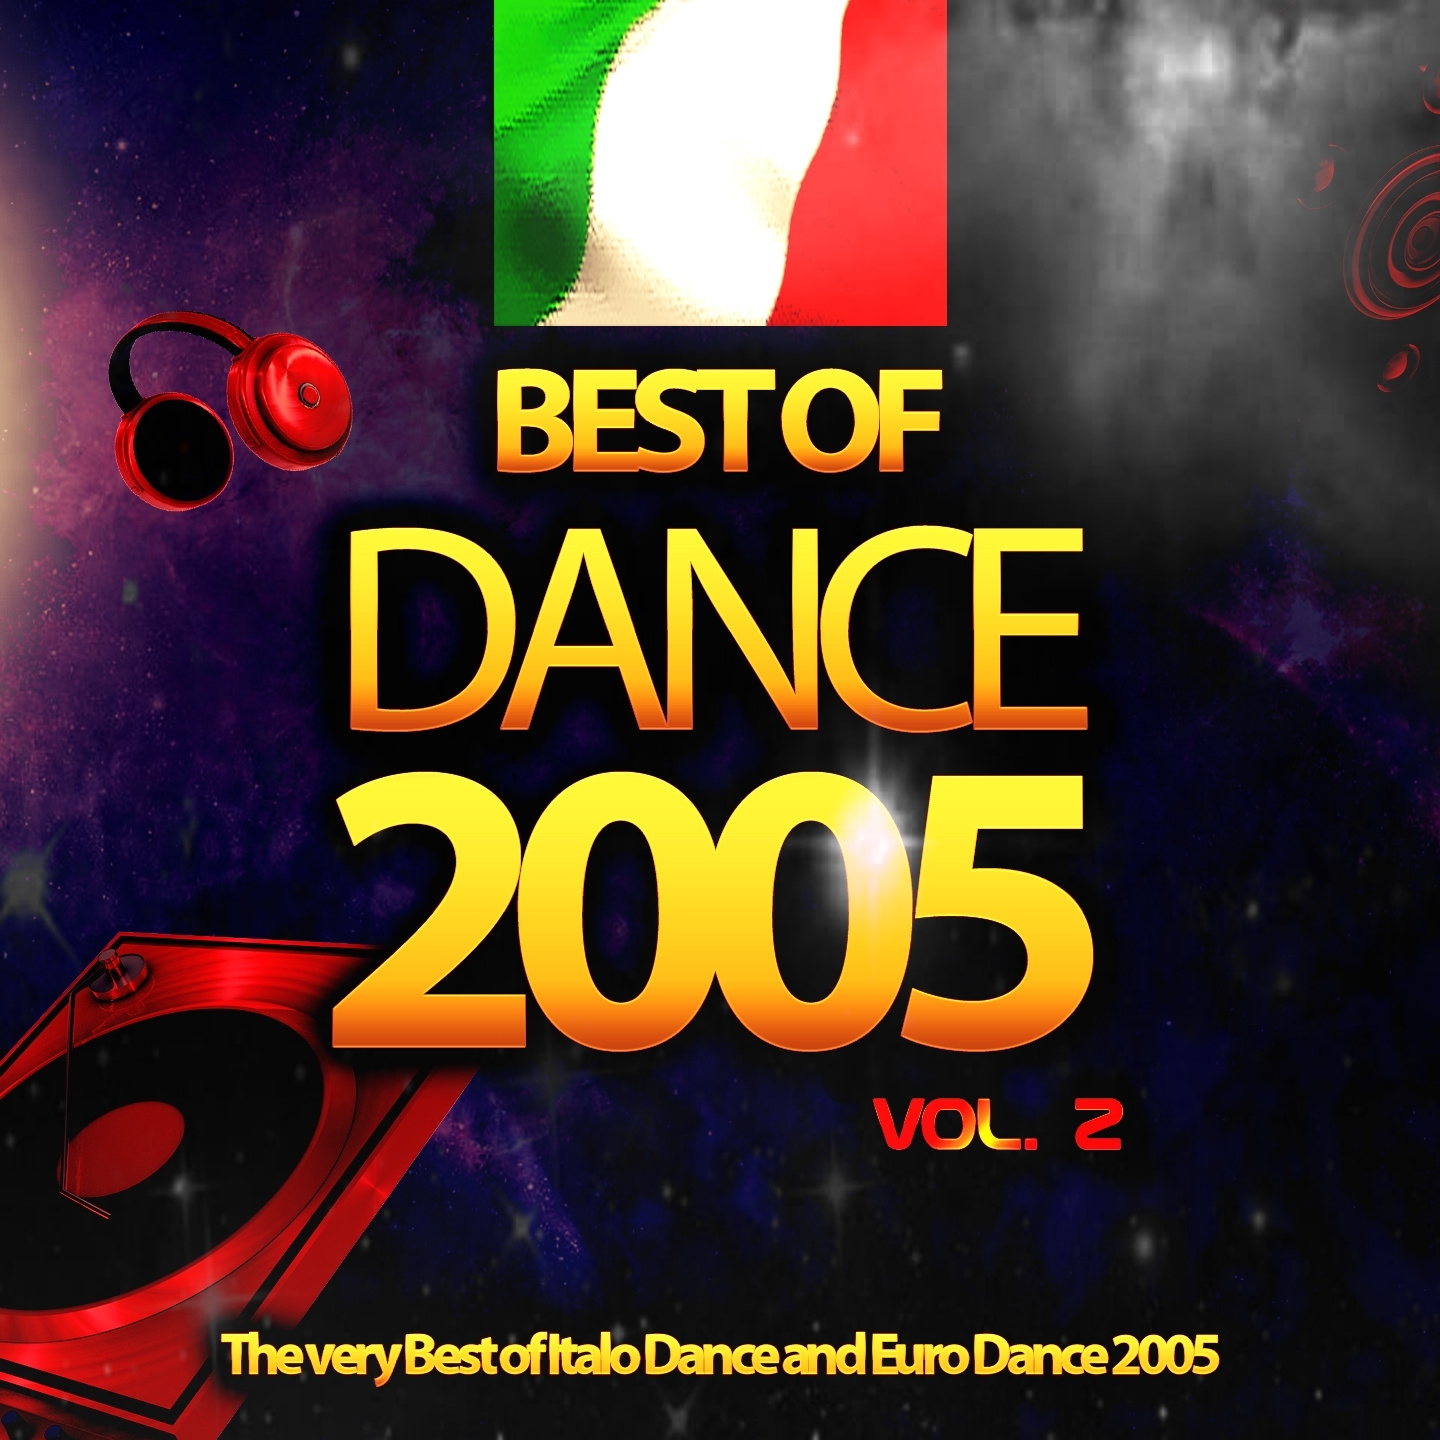 Best of Dance 2005, Vol. 2